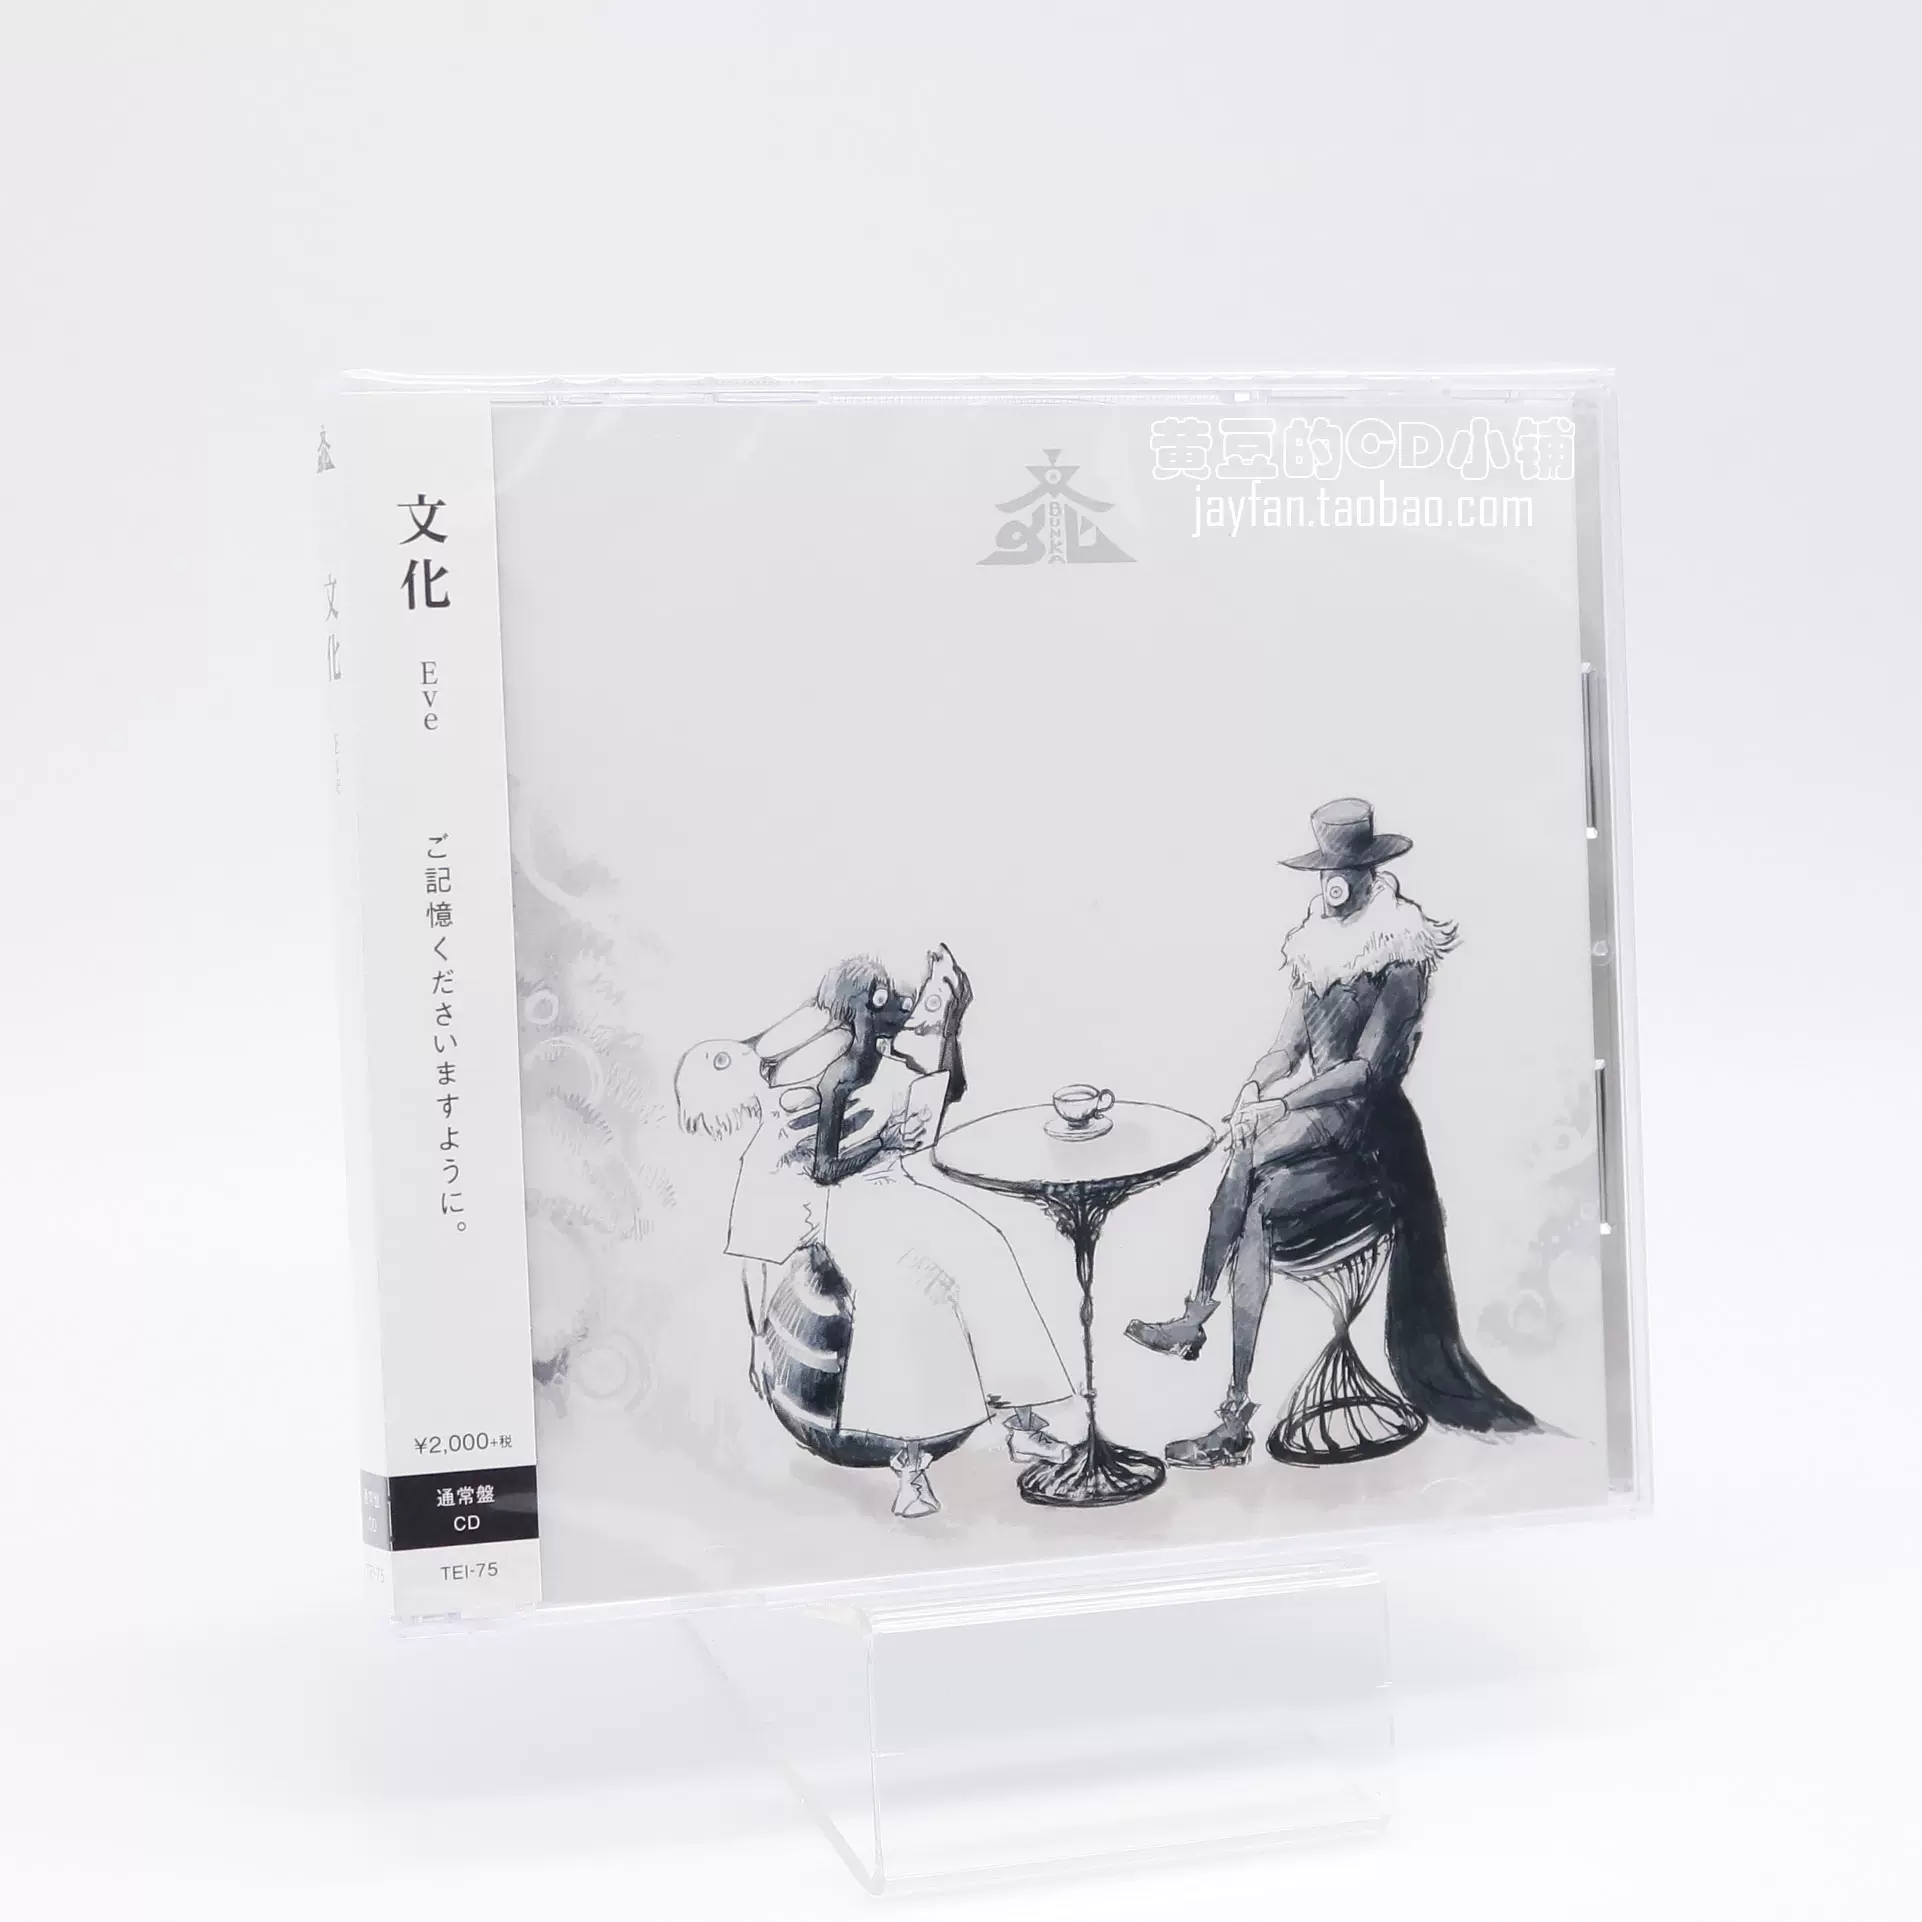 Eve 文化CD 全款計銷量-Taobao